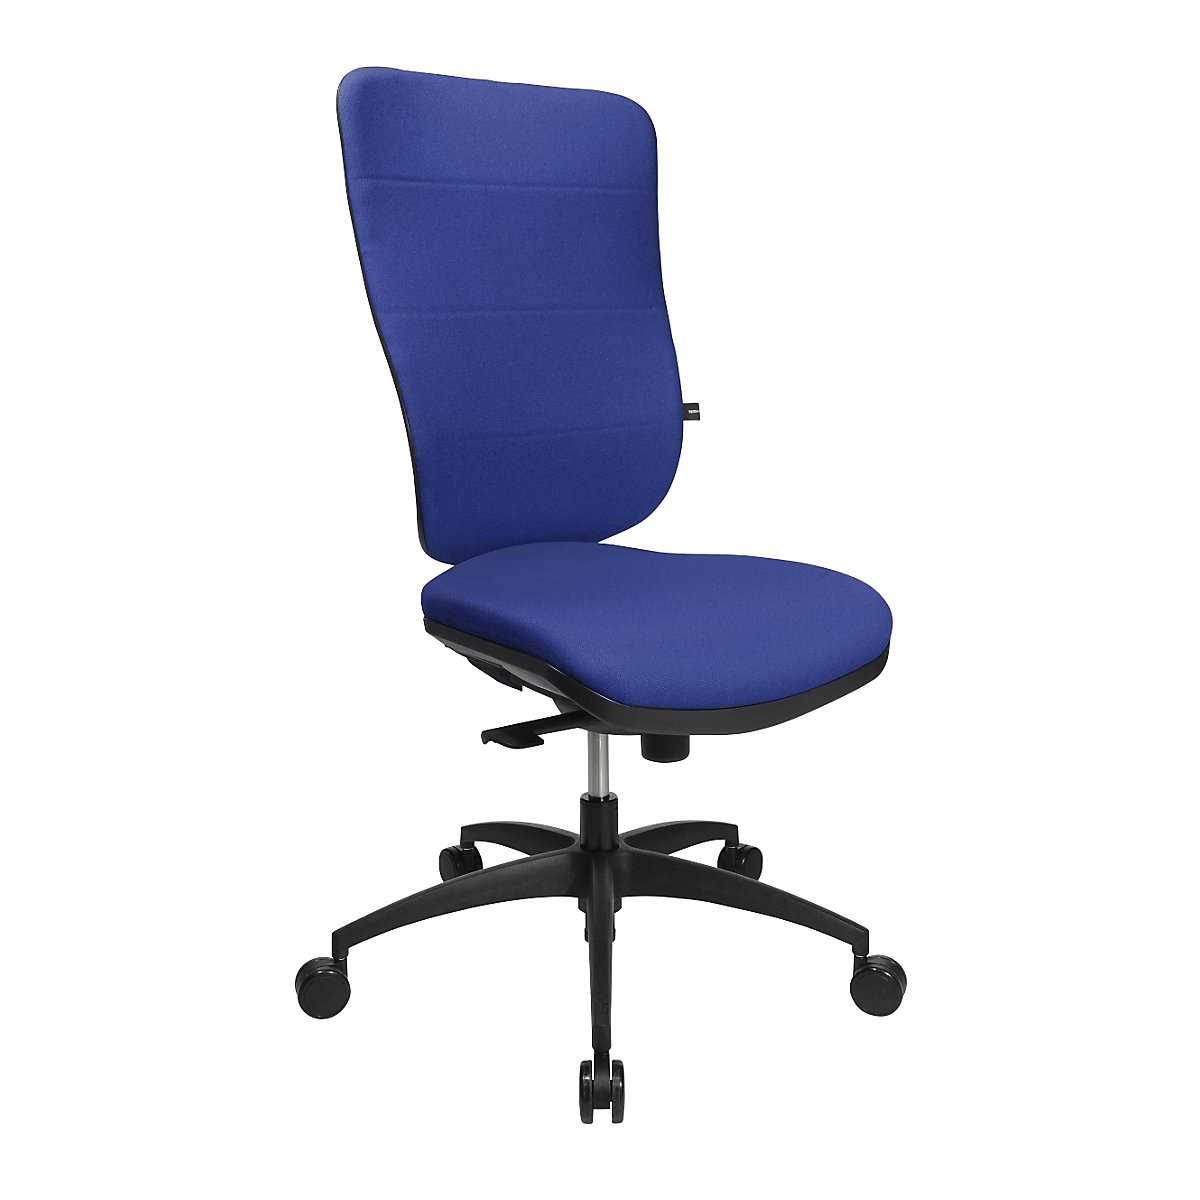 Cadeira giratória ortopédica, mecanismo síncrono, assento ortopédico – Topstar, com encosto almofadado, azul-9